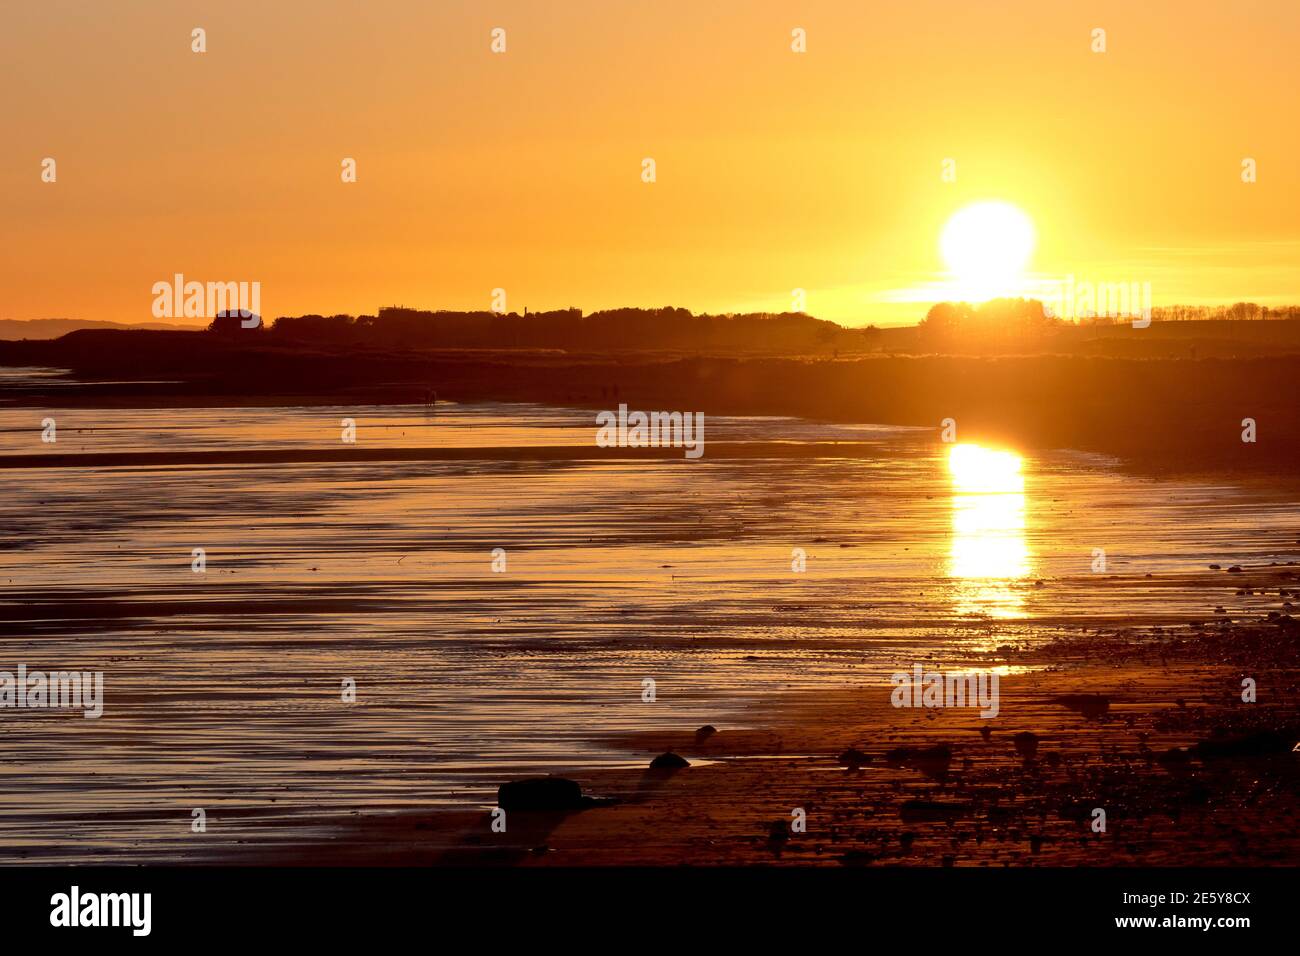 Il sole comincia a tramontare sulla spiaggia di Arbroath alla fine di un giorno d'inverno, la sua luce si riflette nelle sabbie umide. Foto Stock